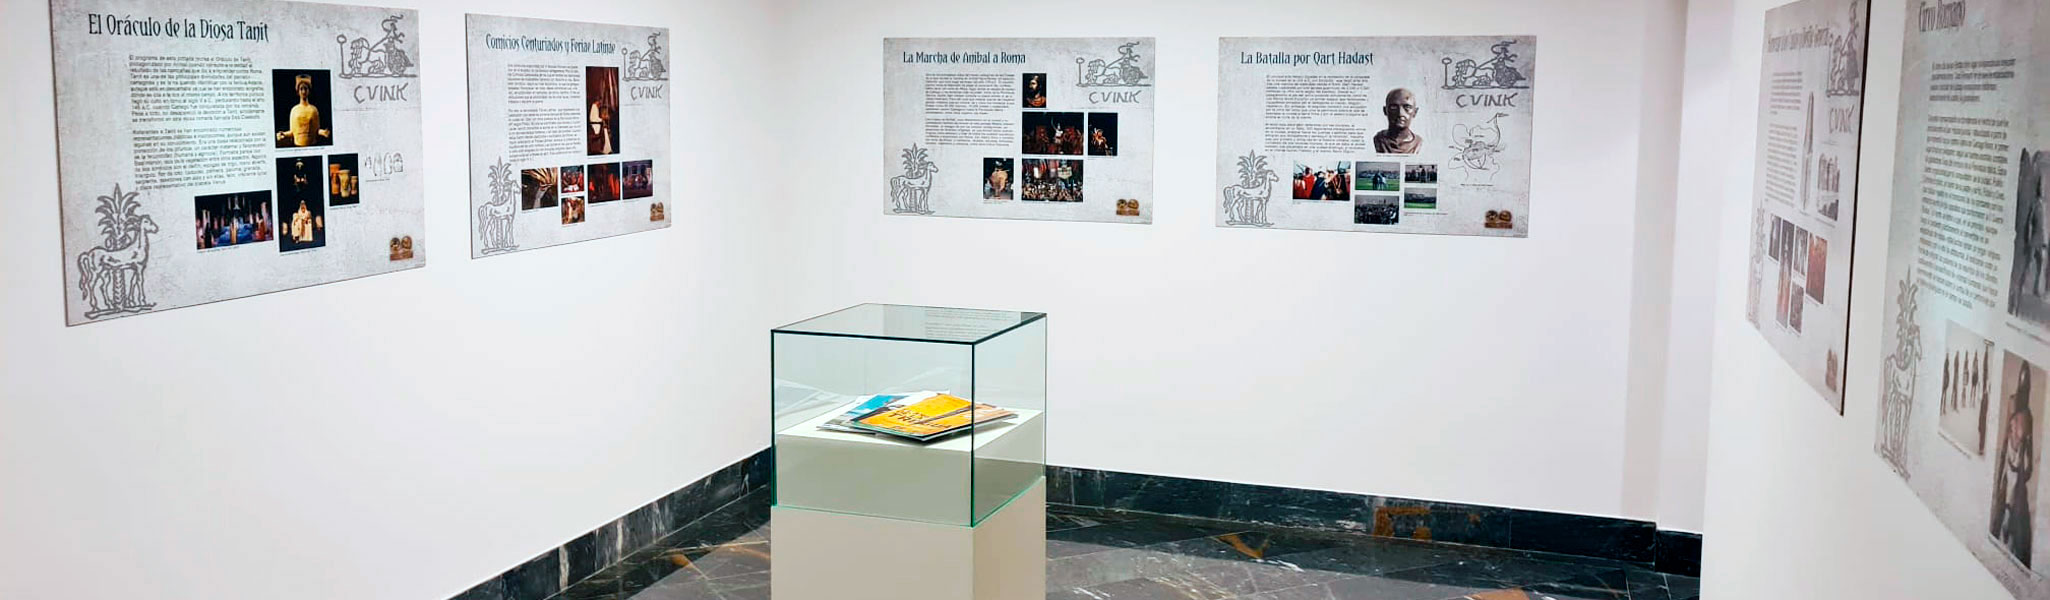 Vuelve la Exposición Temporal "UNA HISTORIA HECHA FIESTA" en el Museo Teatro Romano de Cartagena